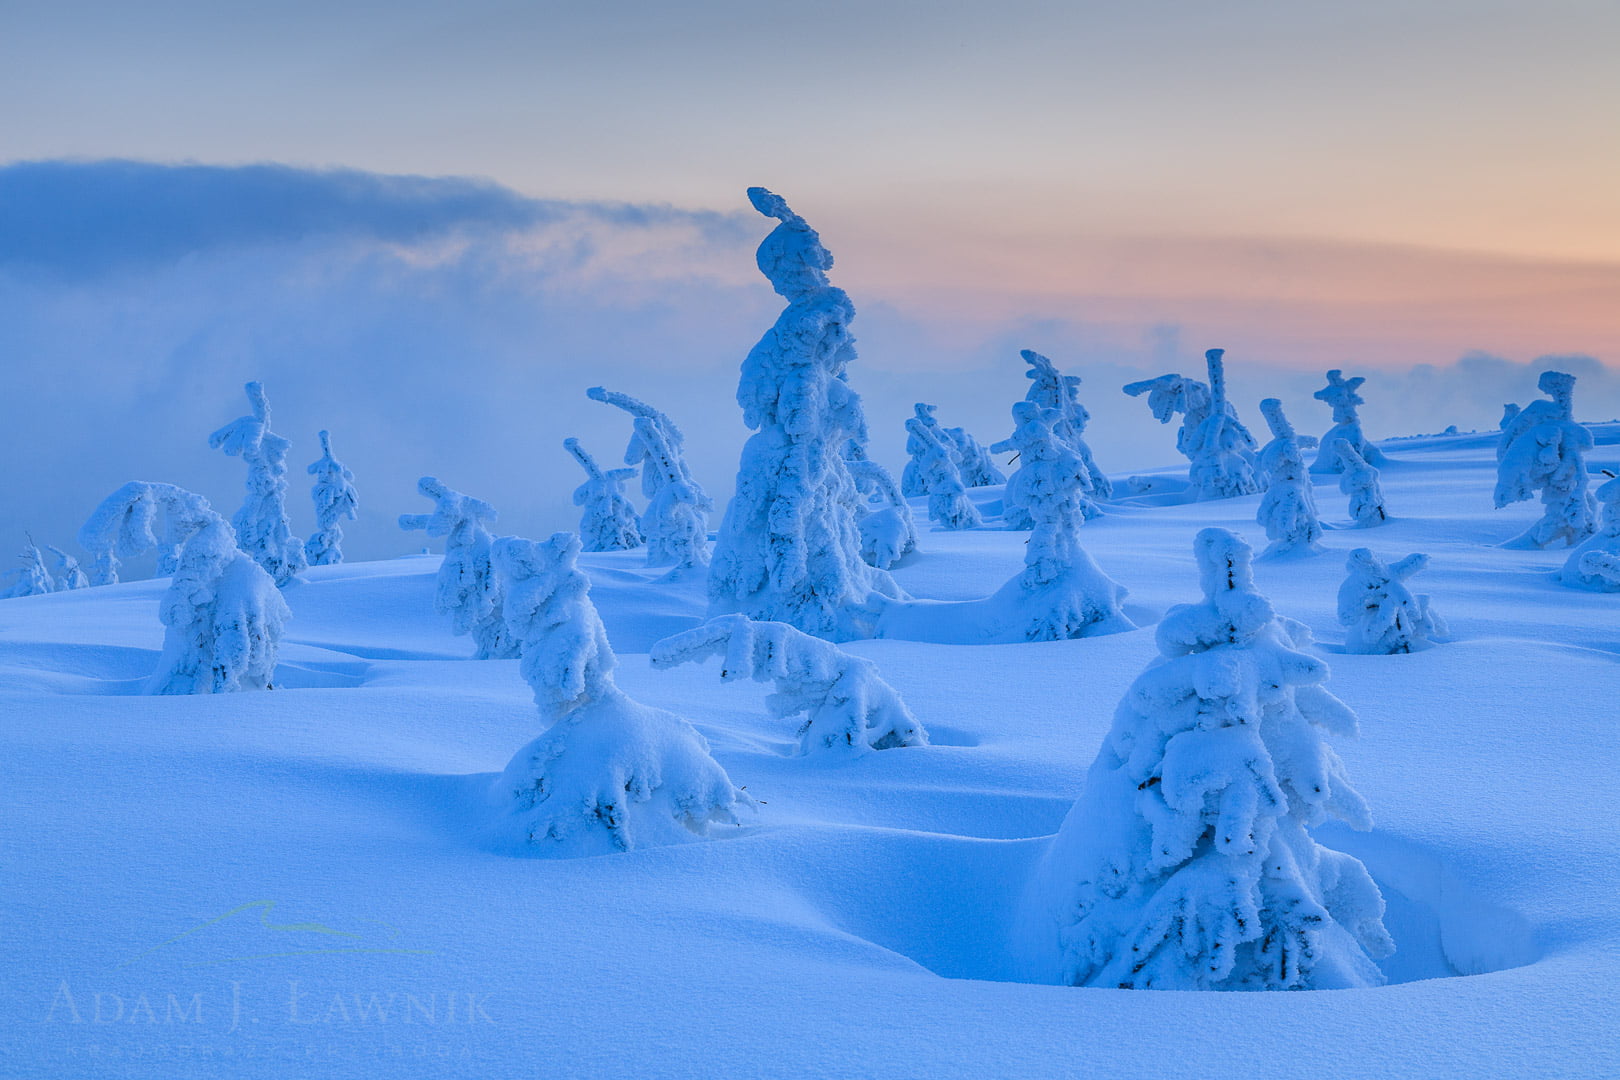 Oblepione śniegiem drzewa w Beskidzie Śląskim